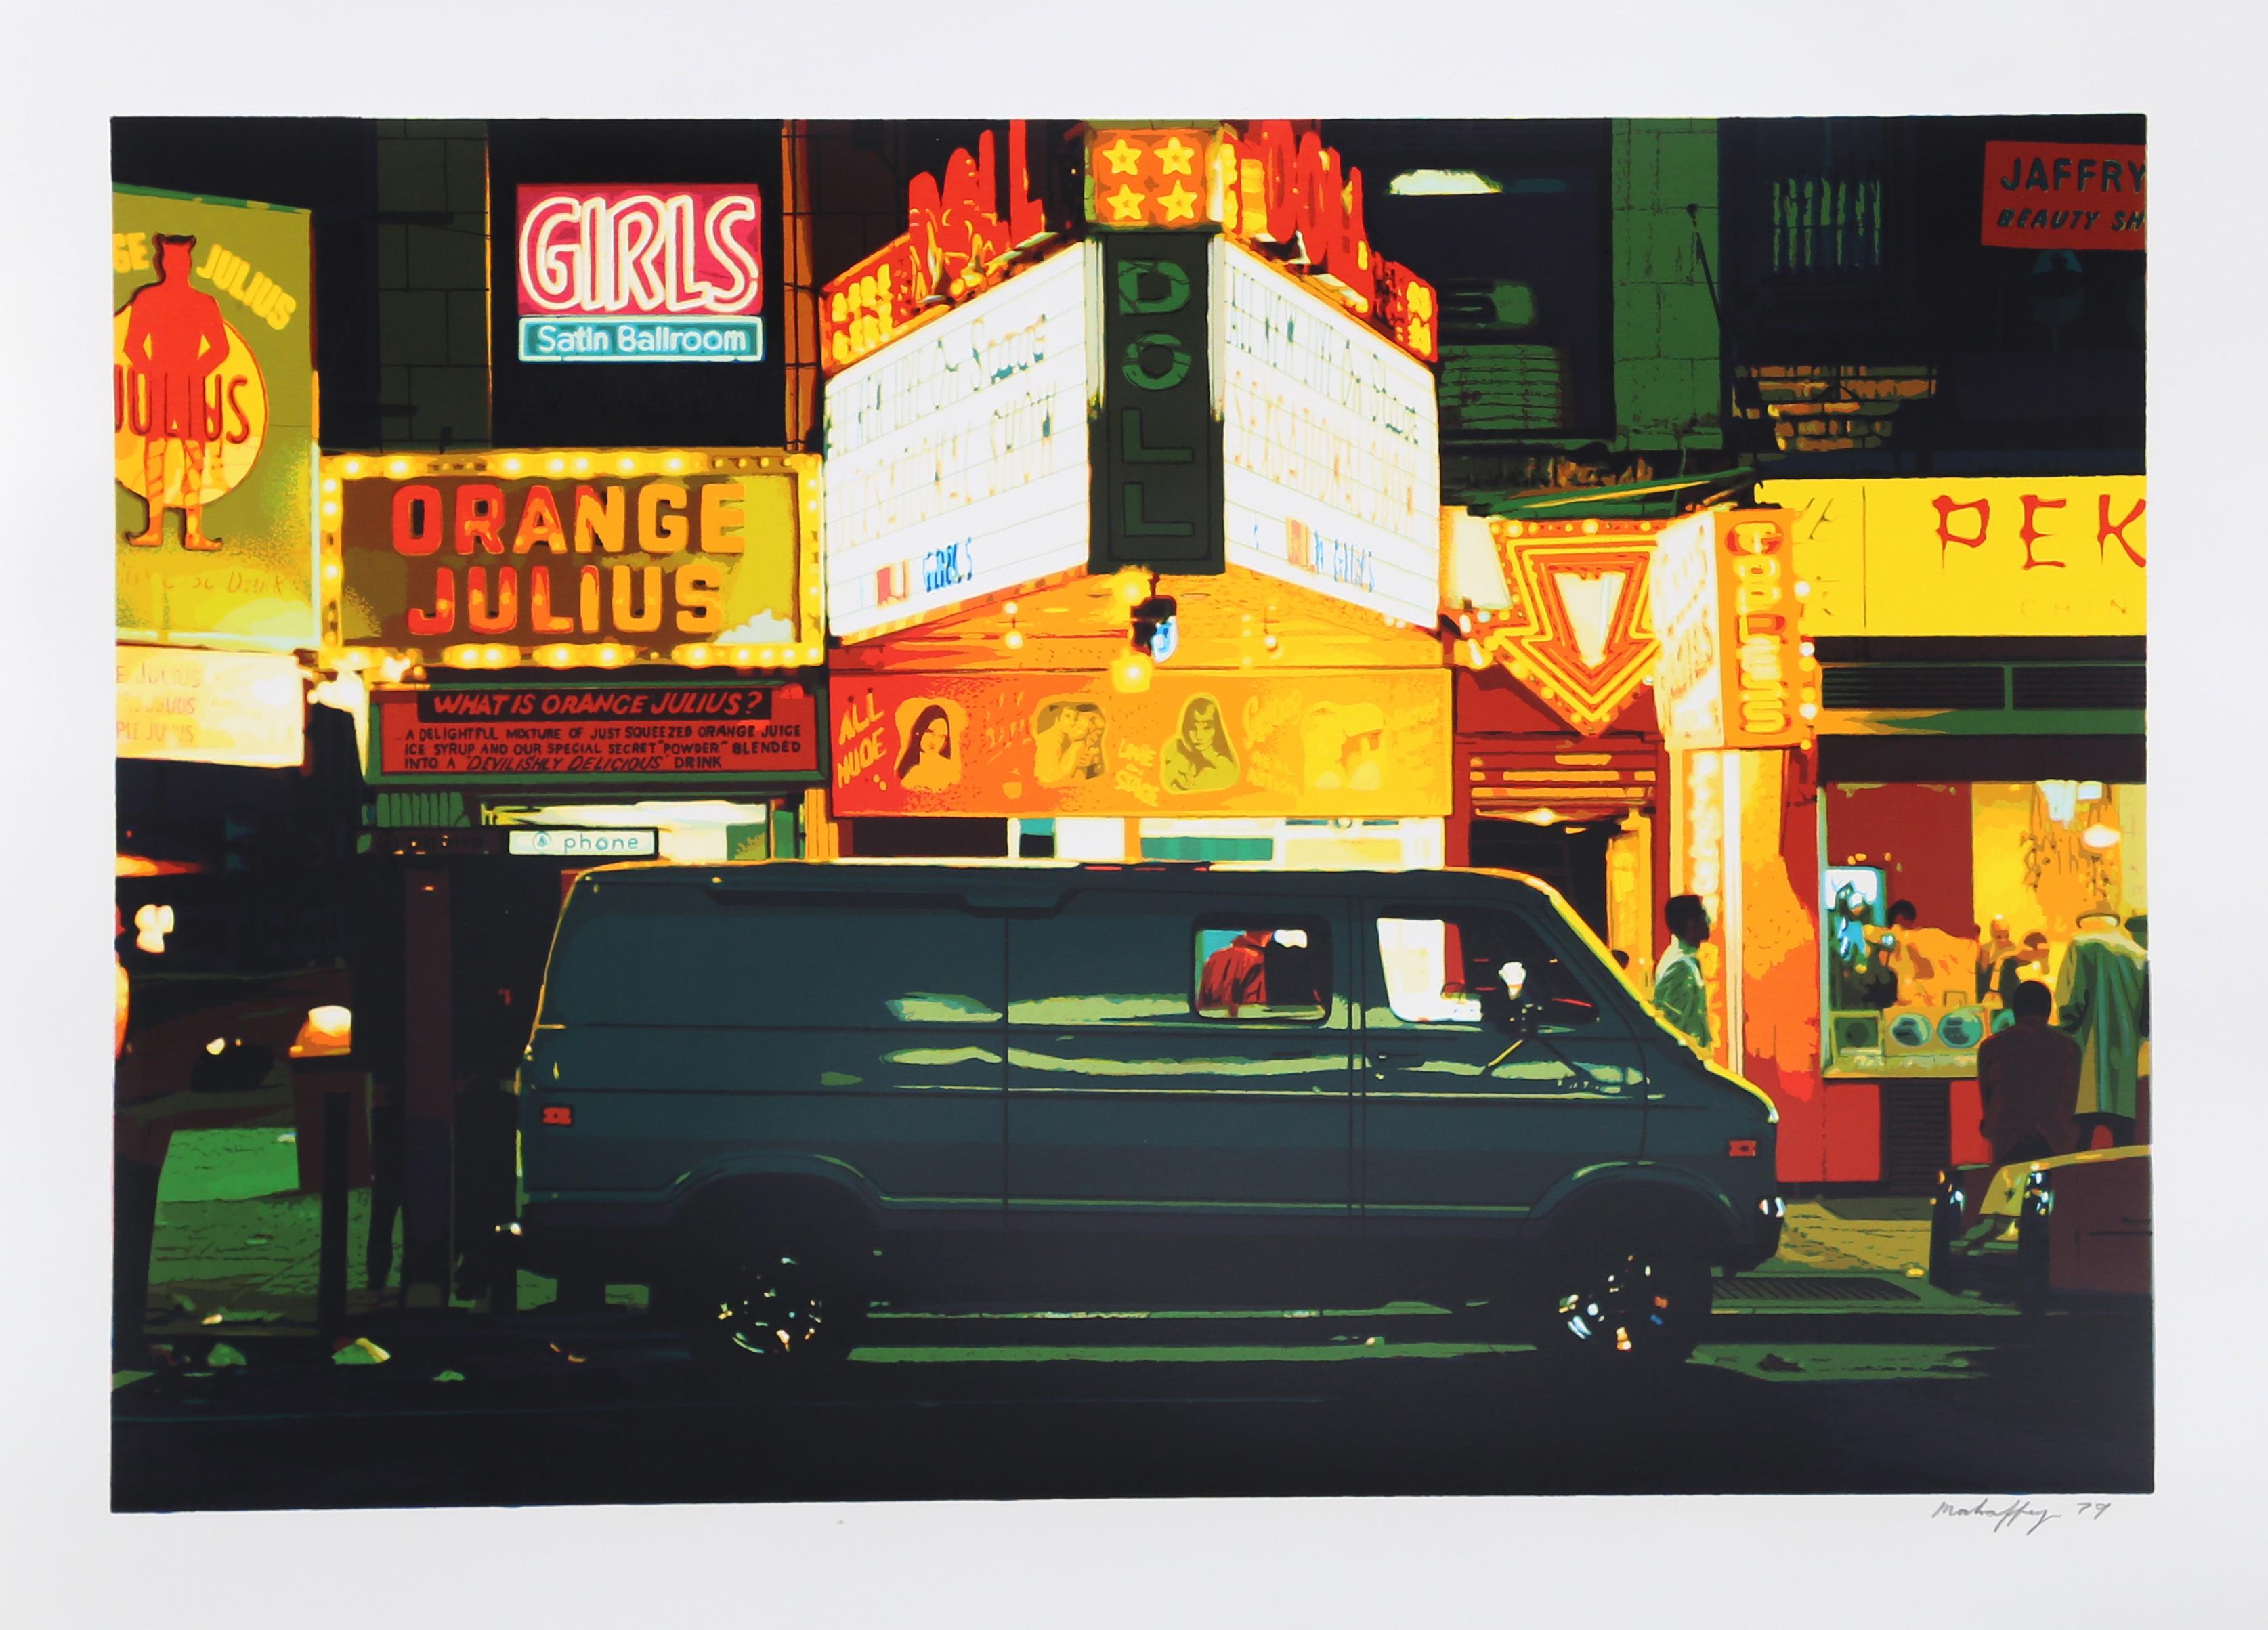 Nacht, Times Square aus dem Portfolio Stadtansichten
Noel Mahaffey, Amerikaner (1944)
Datum: 1981
Siebdruck auf Somerset, signiert und nummeriert mit Bleistift
Auflage 250 Stück, 30 AP
Größe: 22 Zoll x 30 Zoll (55,88 cm x 76,2 cm)